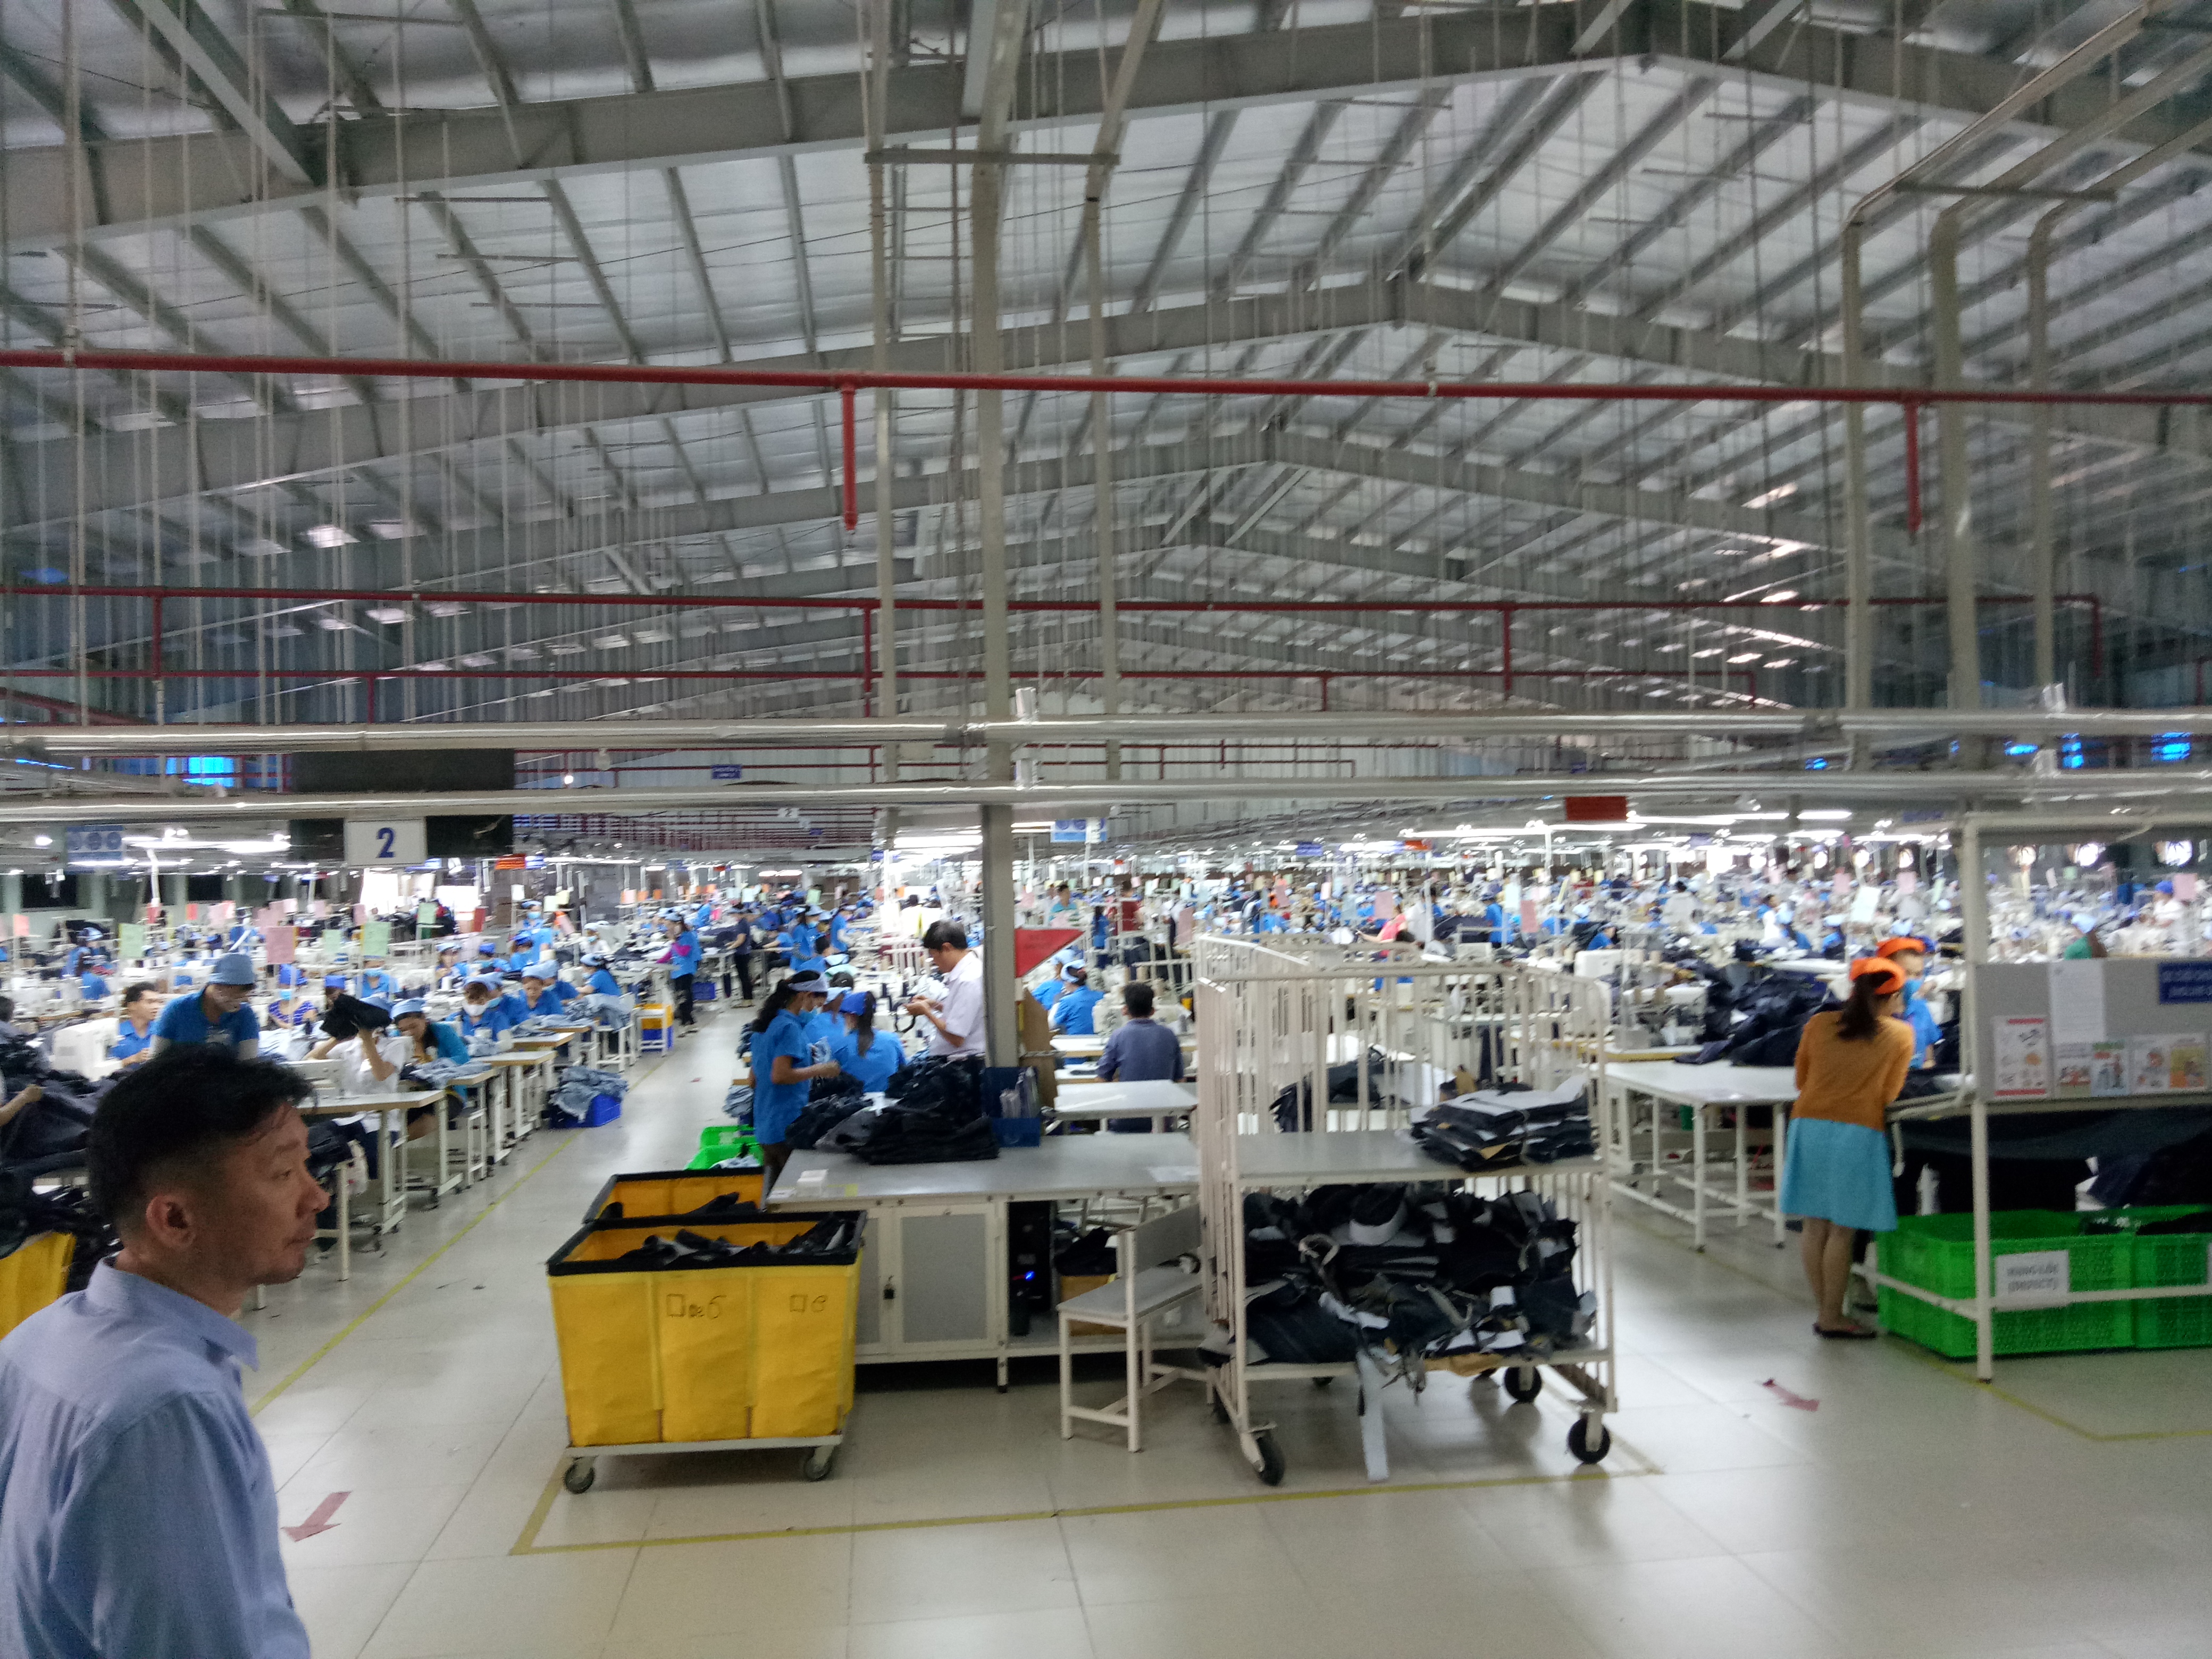 Bán/ cho thuê xưởng may 10 chuyền có sẵn 858 công nhân đang làm việc ở Tân Uyên Bình Dương